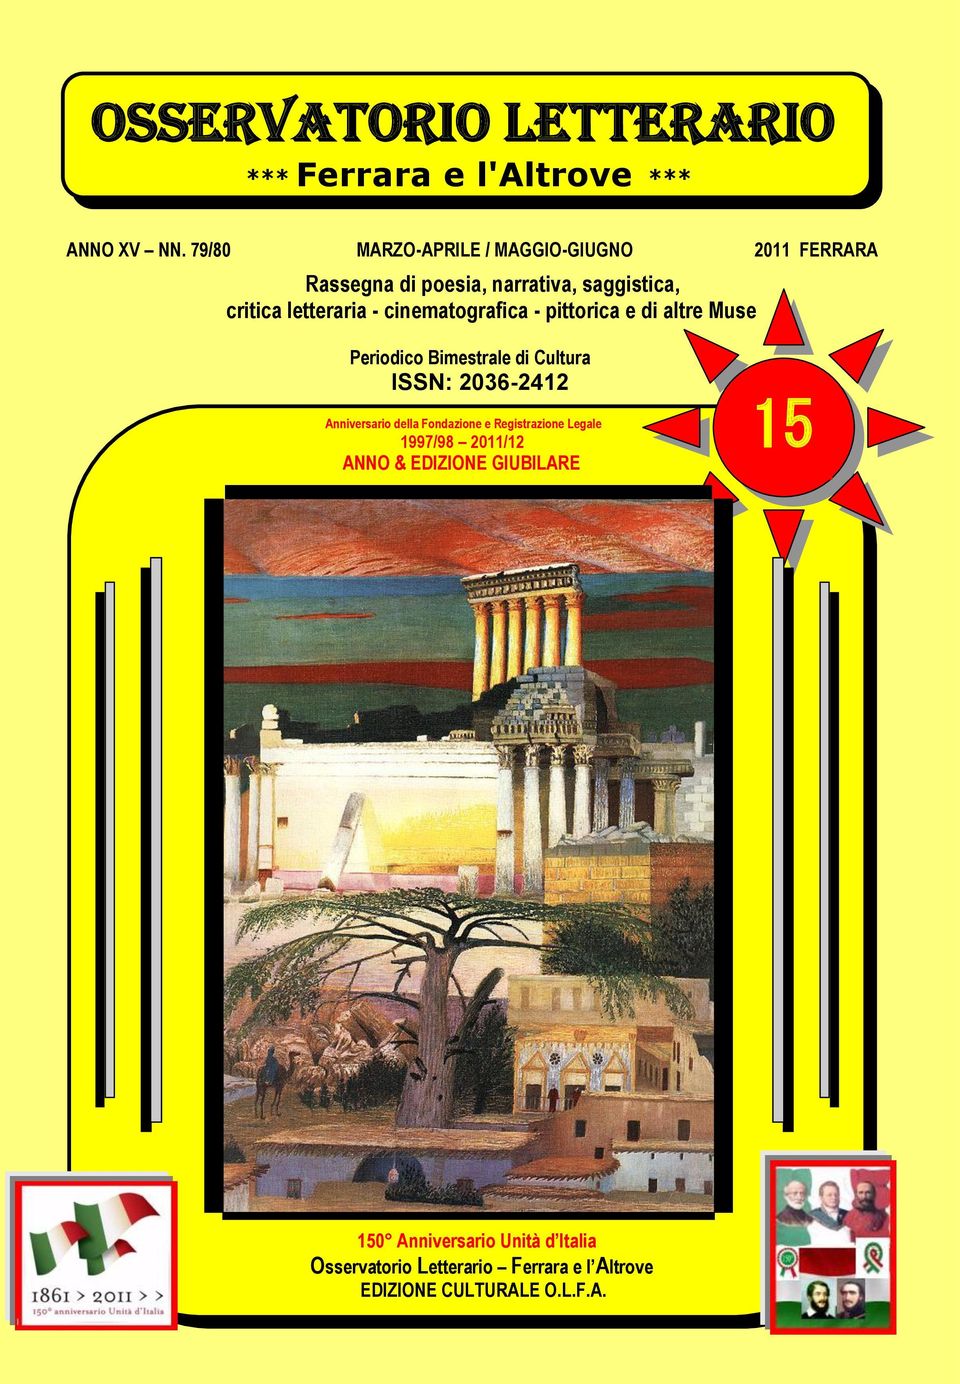 cinematografica - pittorica e di altre Muse Periodico Bimestrale di Cultura ISSN: 2036-2412 Anniversario della